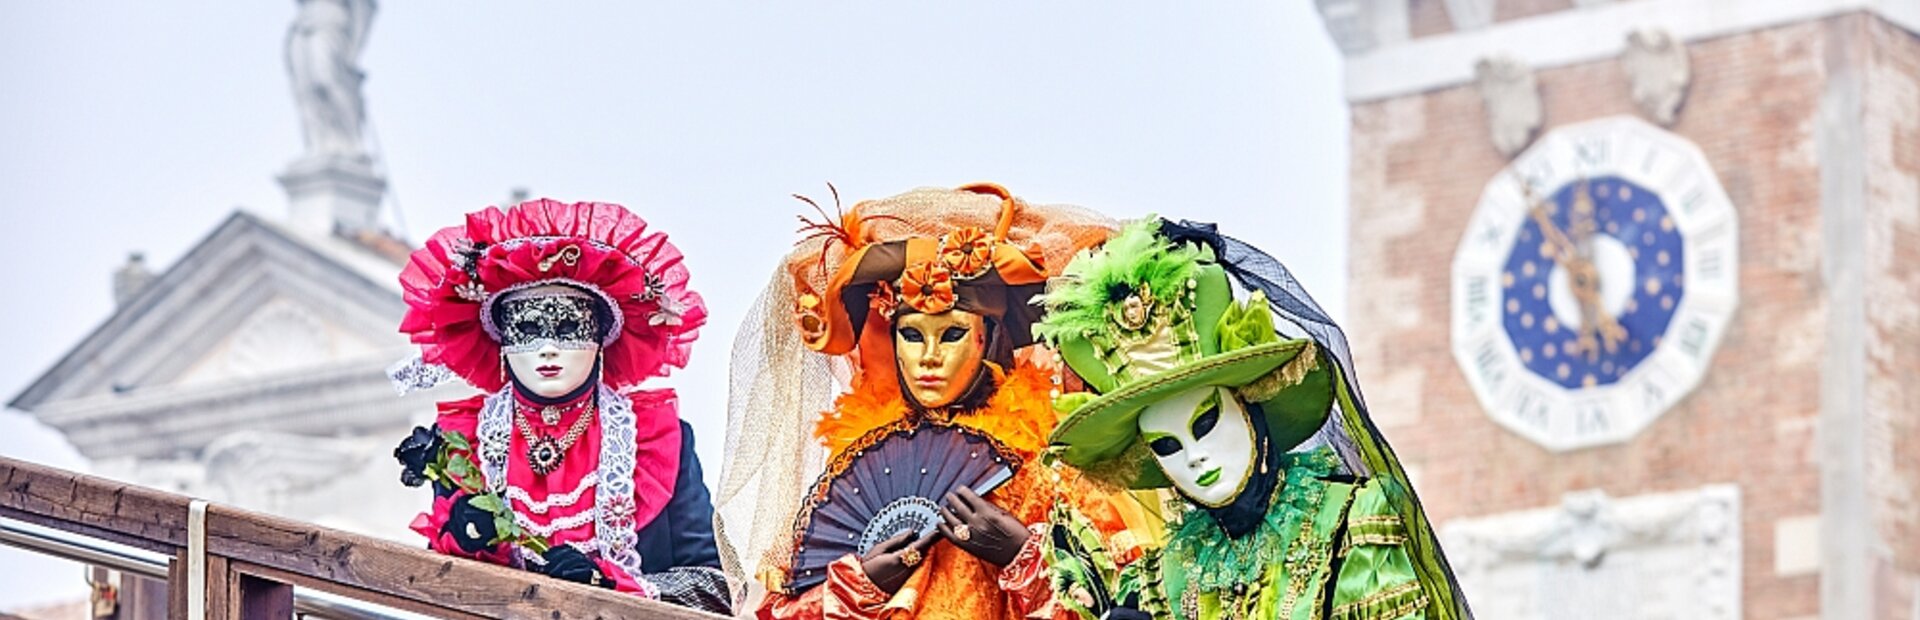 Prijmite naše pozvanie na veľkolepý benátsky karneval